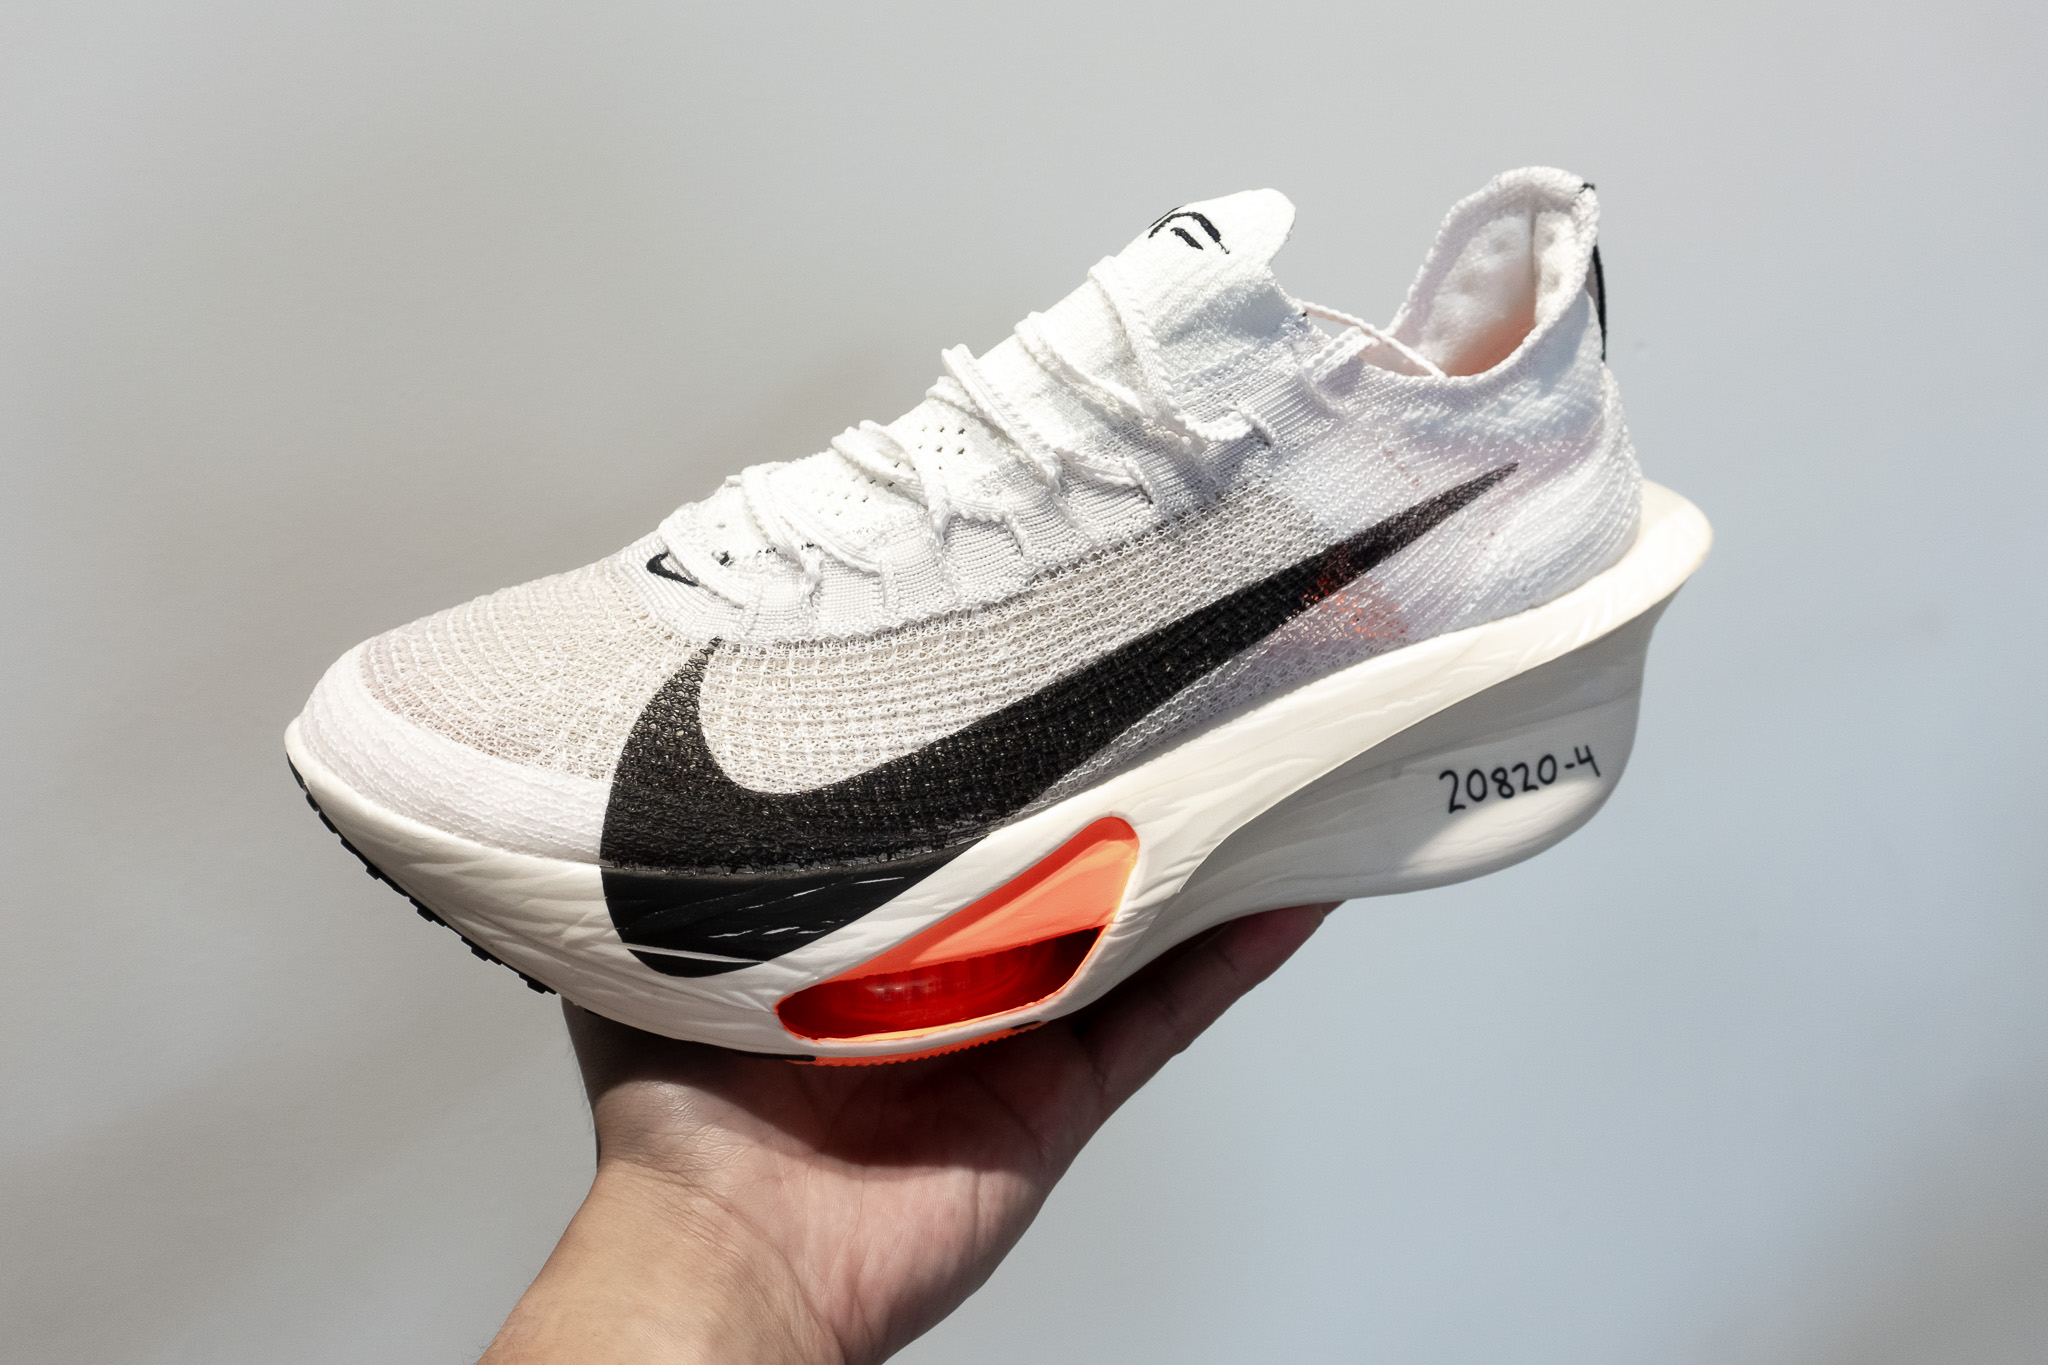 Análisis de las Nike Alphafly 3: Las superzapatillas de Nike podrían valer cada céntimo